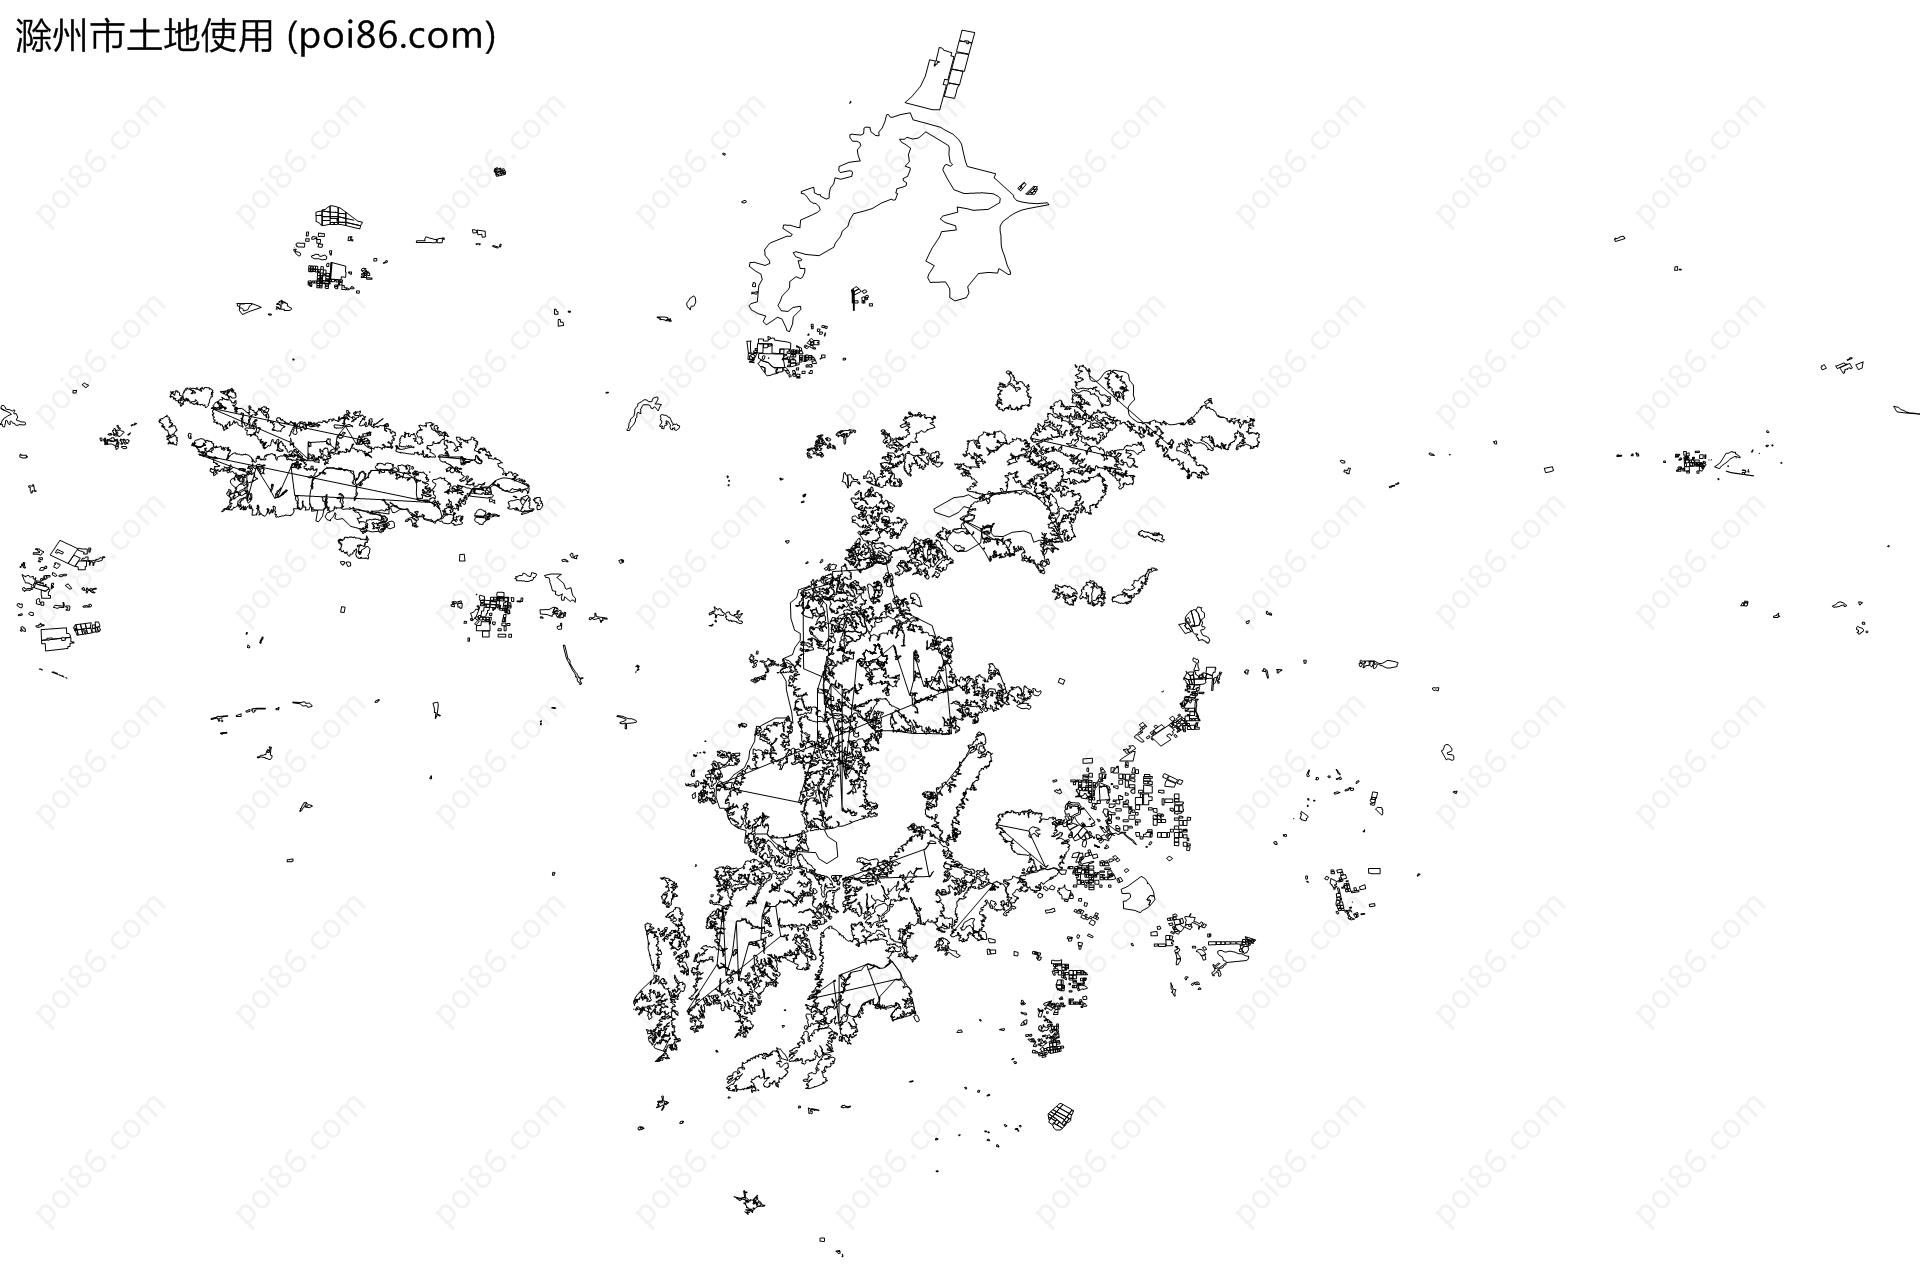 滁州市土地使用地图